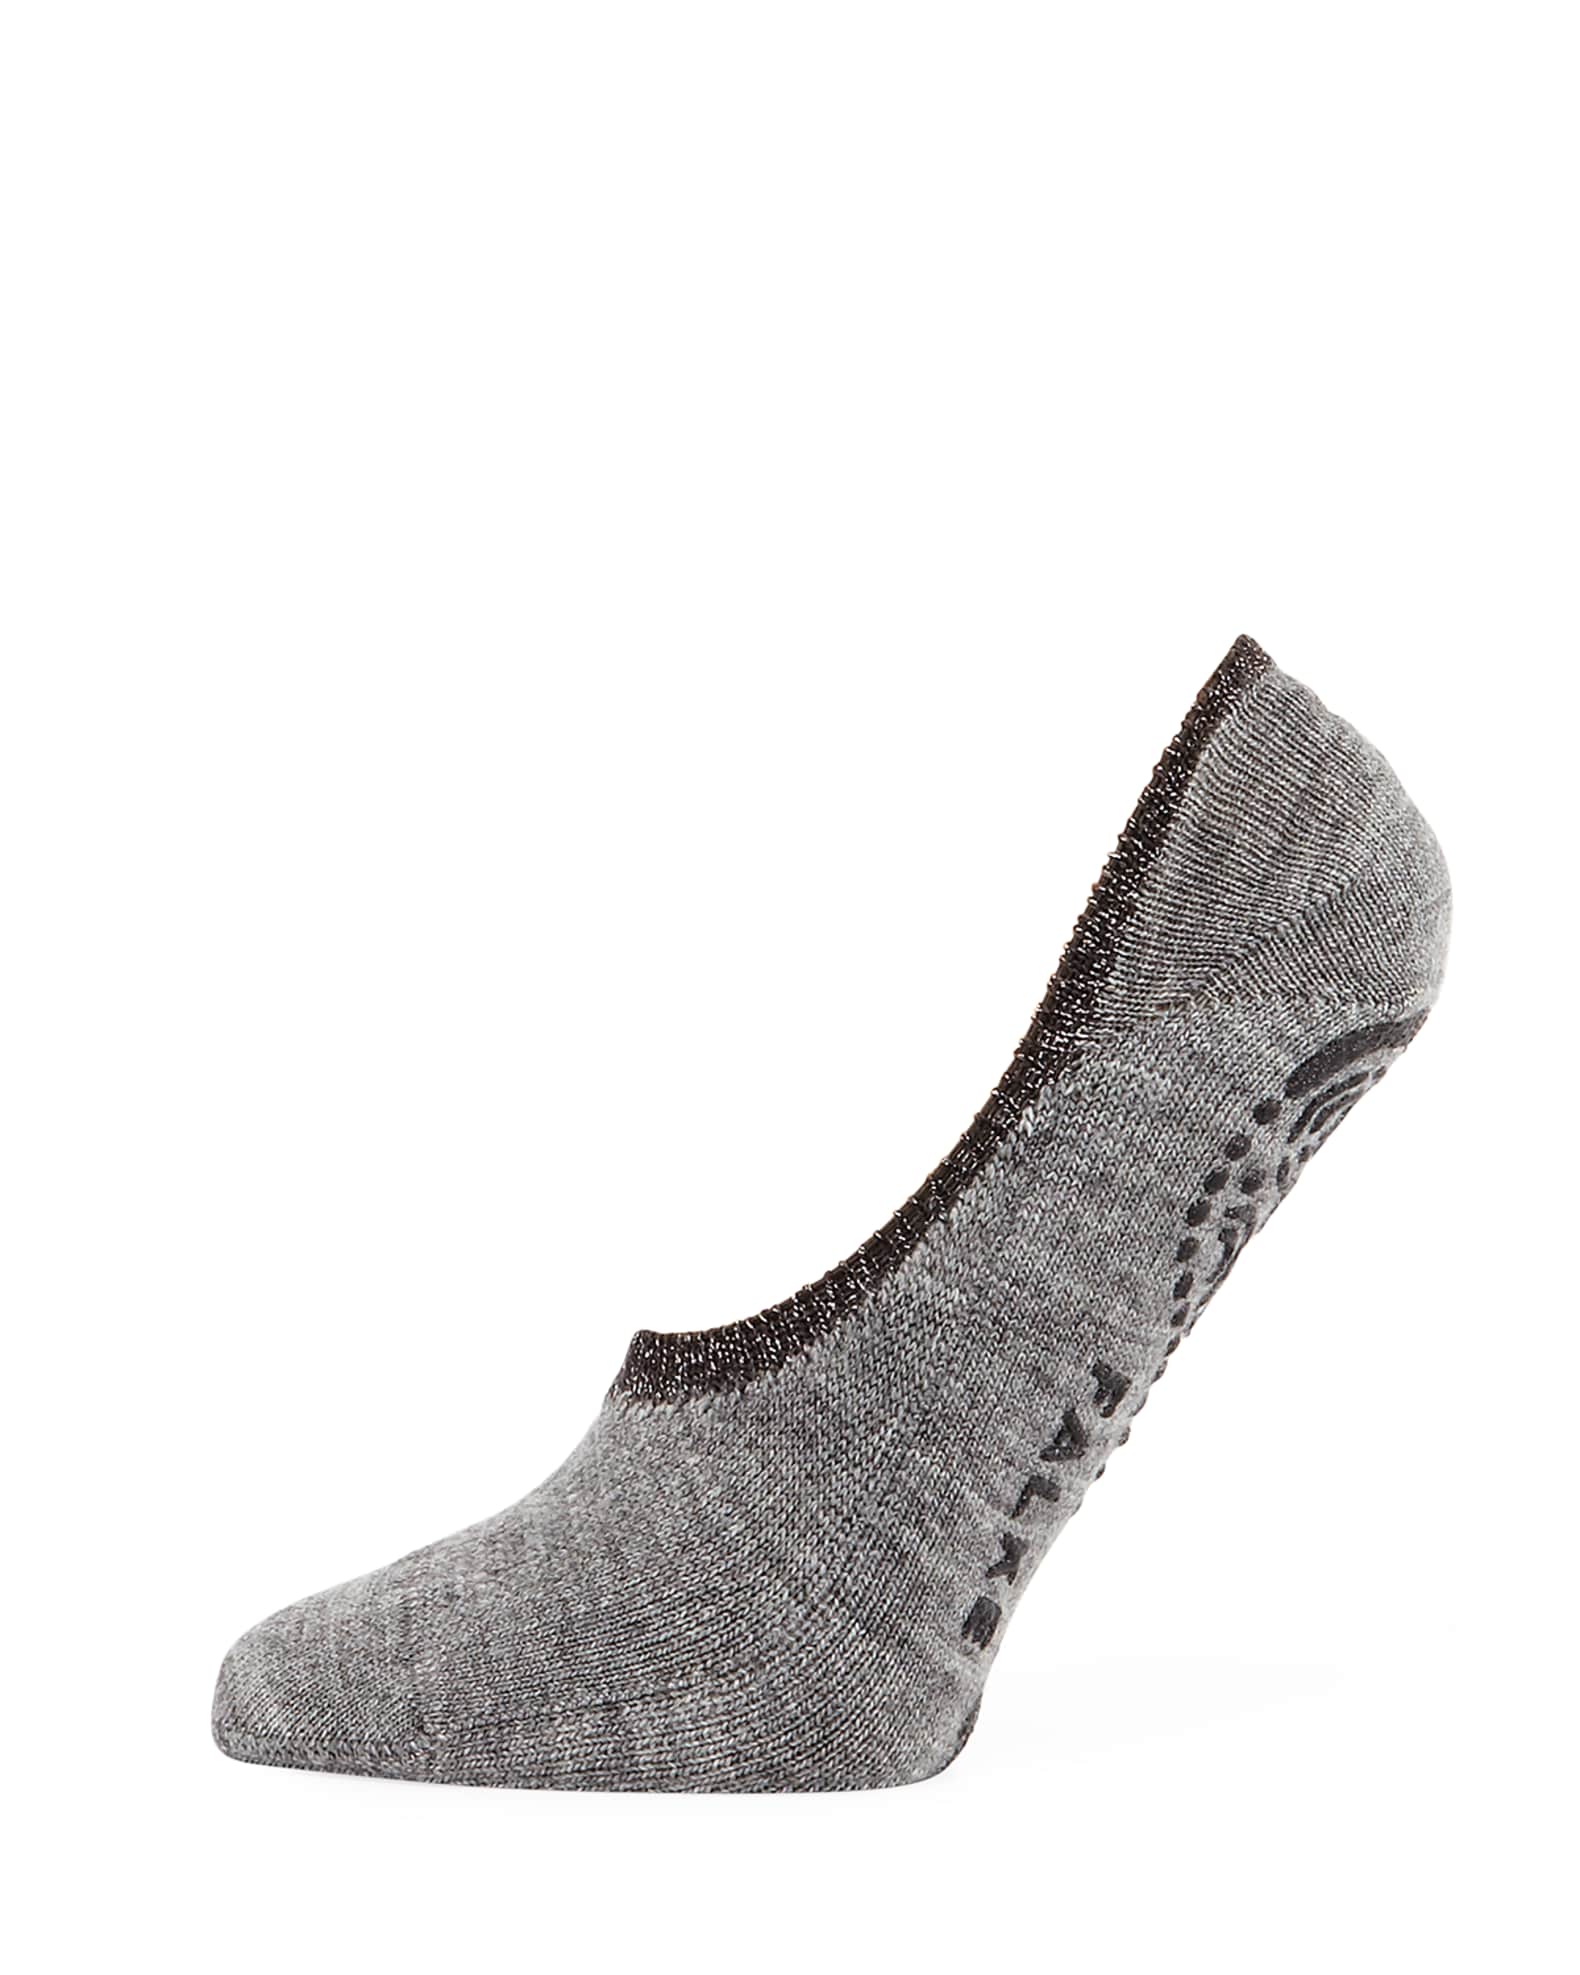 Falke Cozy Ballerina Slipper Socks | Neiman Marcus